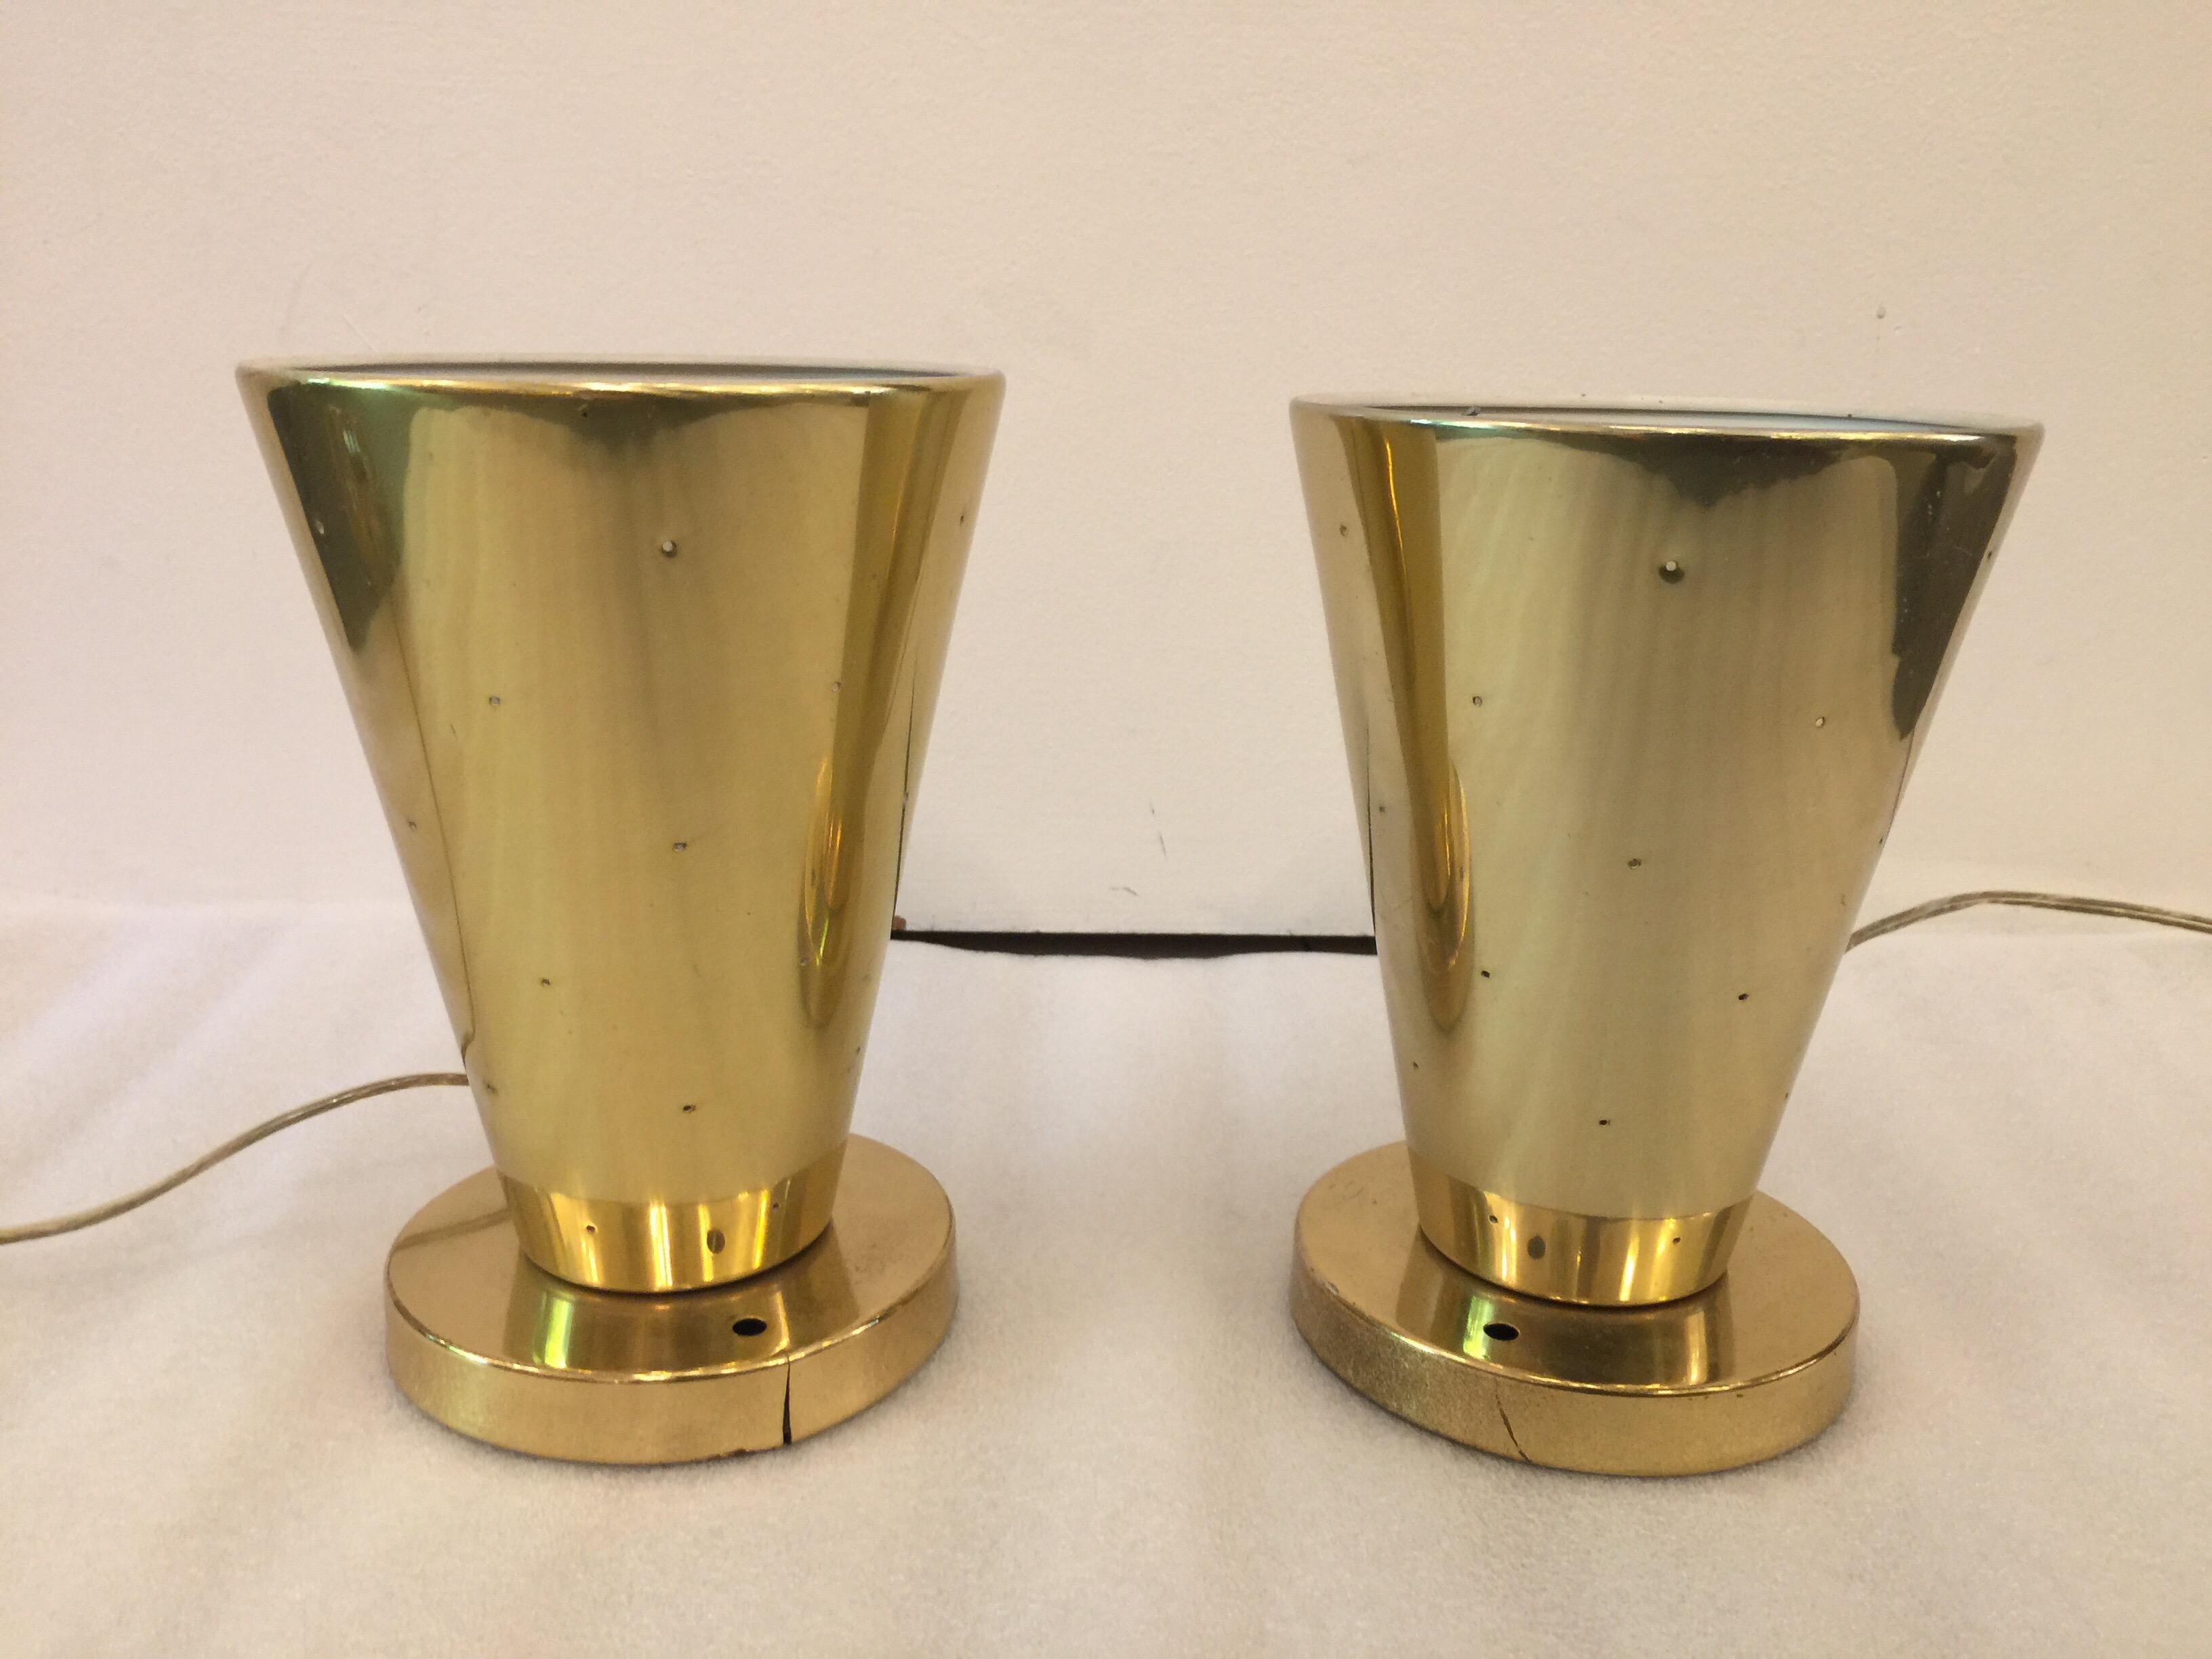 Midcentury Gerald Thurston for Lightolier Ceiling Cone Fixtures, Pair (Aluminium)